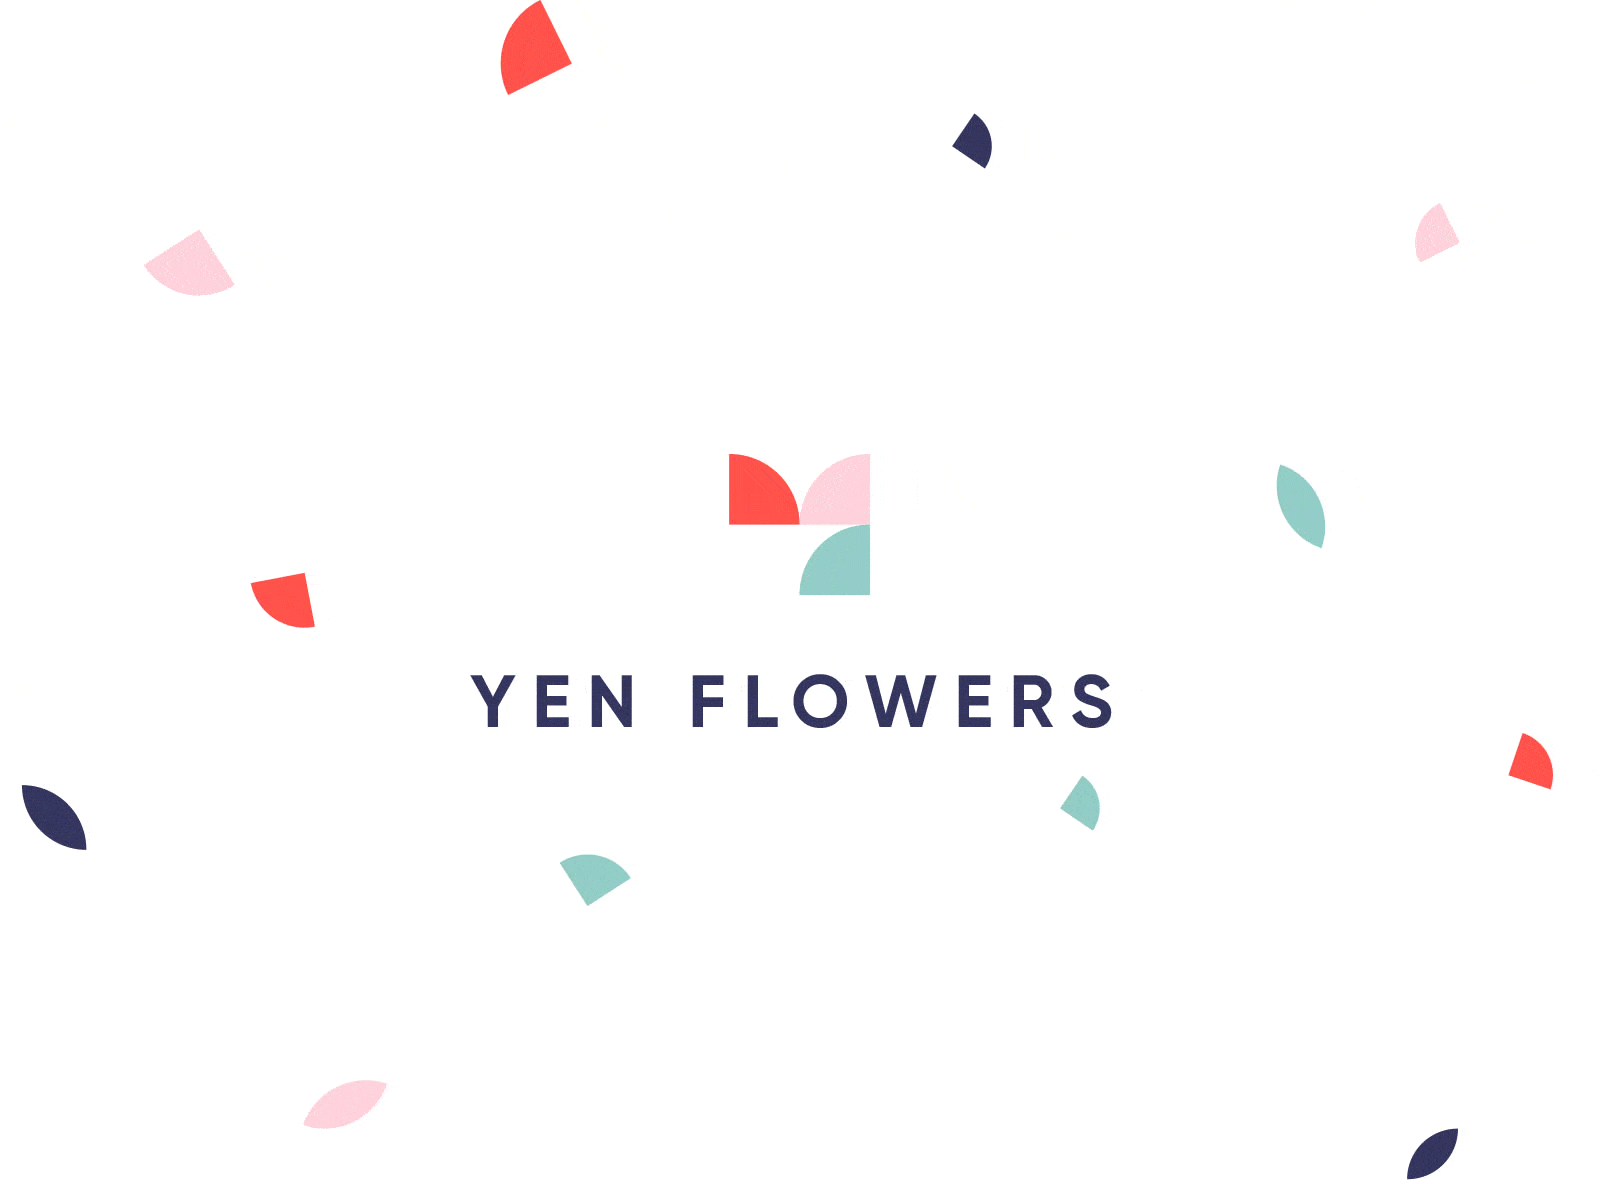 Yen Flowers